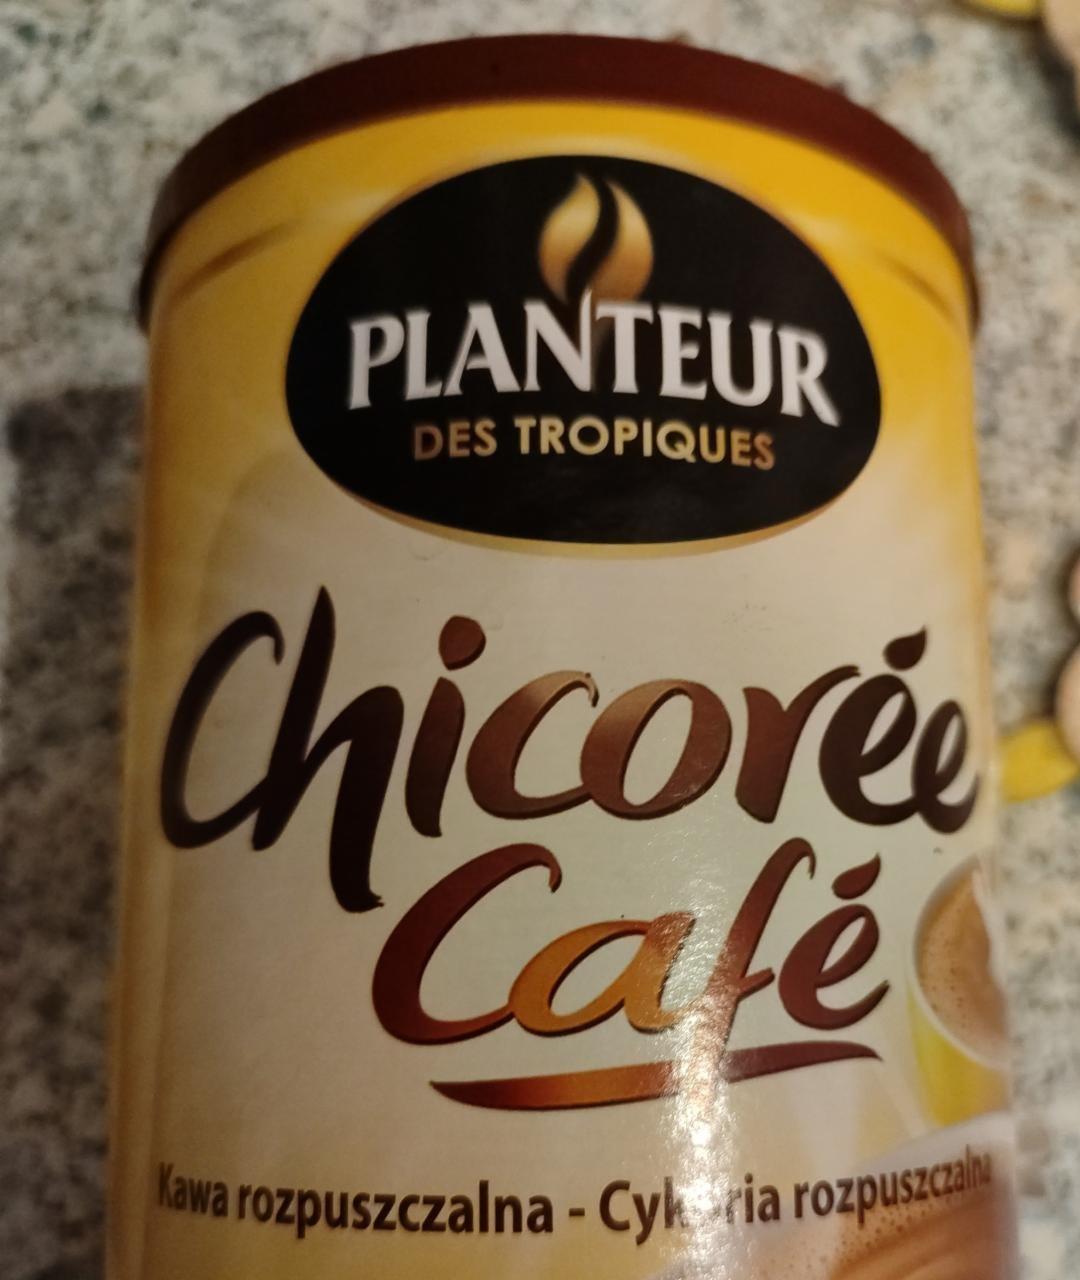 Fotografie - Chicorée Café Planteur des tropiques